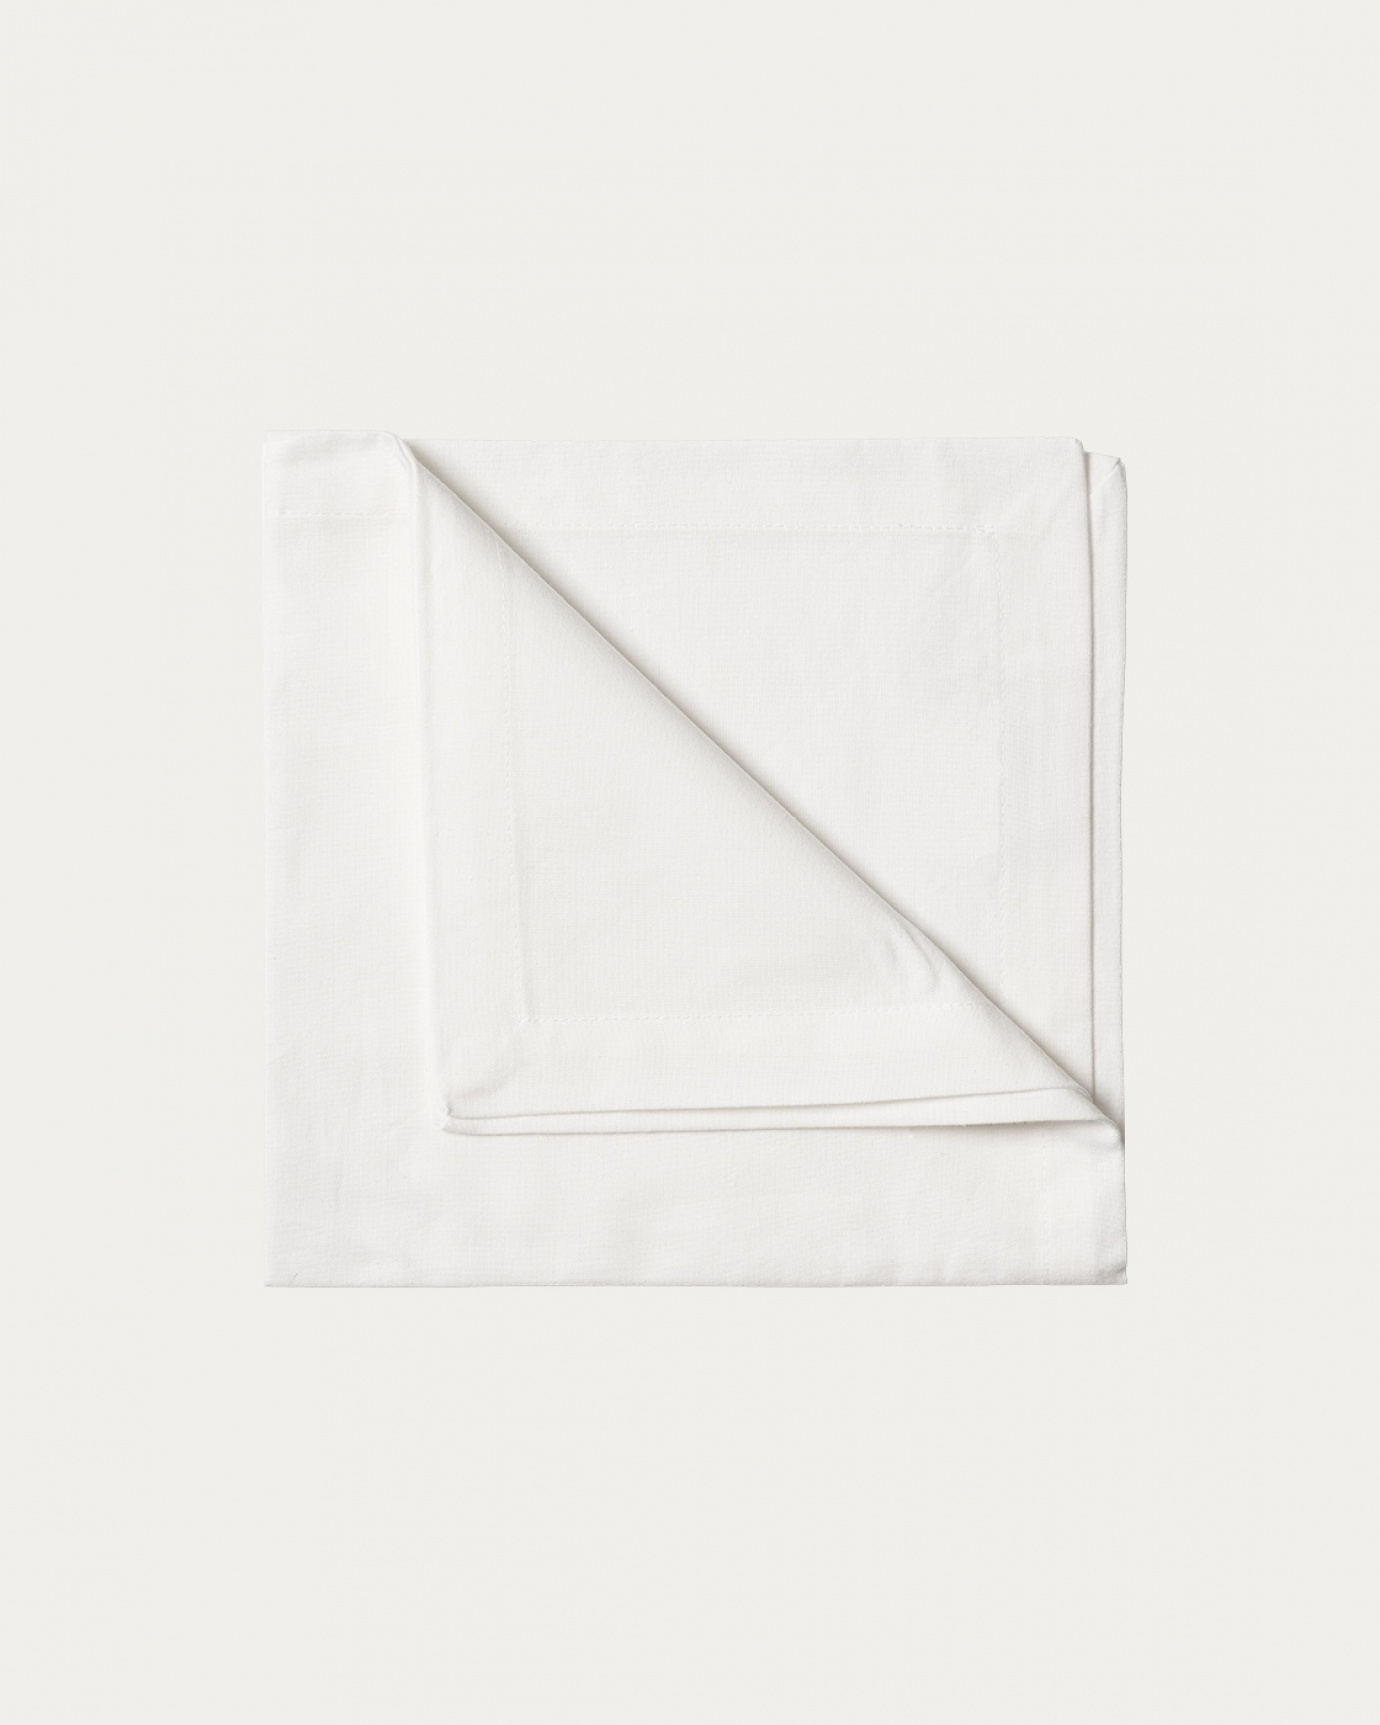 Image du produit serviette de table ROBERT blanc en coton doux de LINUM DESIGN. Taille 45 x 45 cm et vendu en lot de 4.